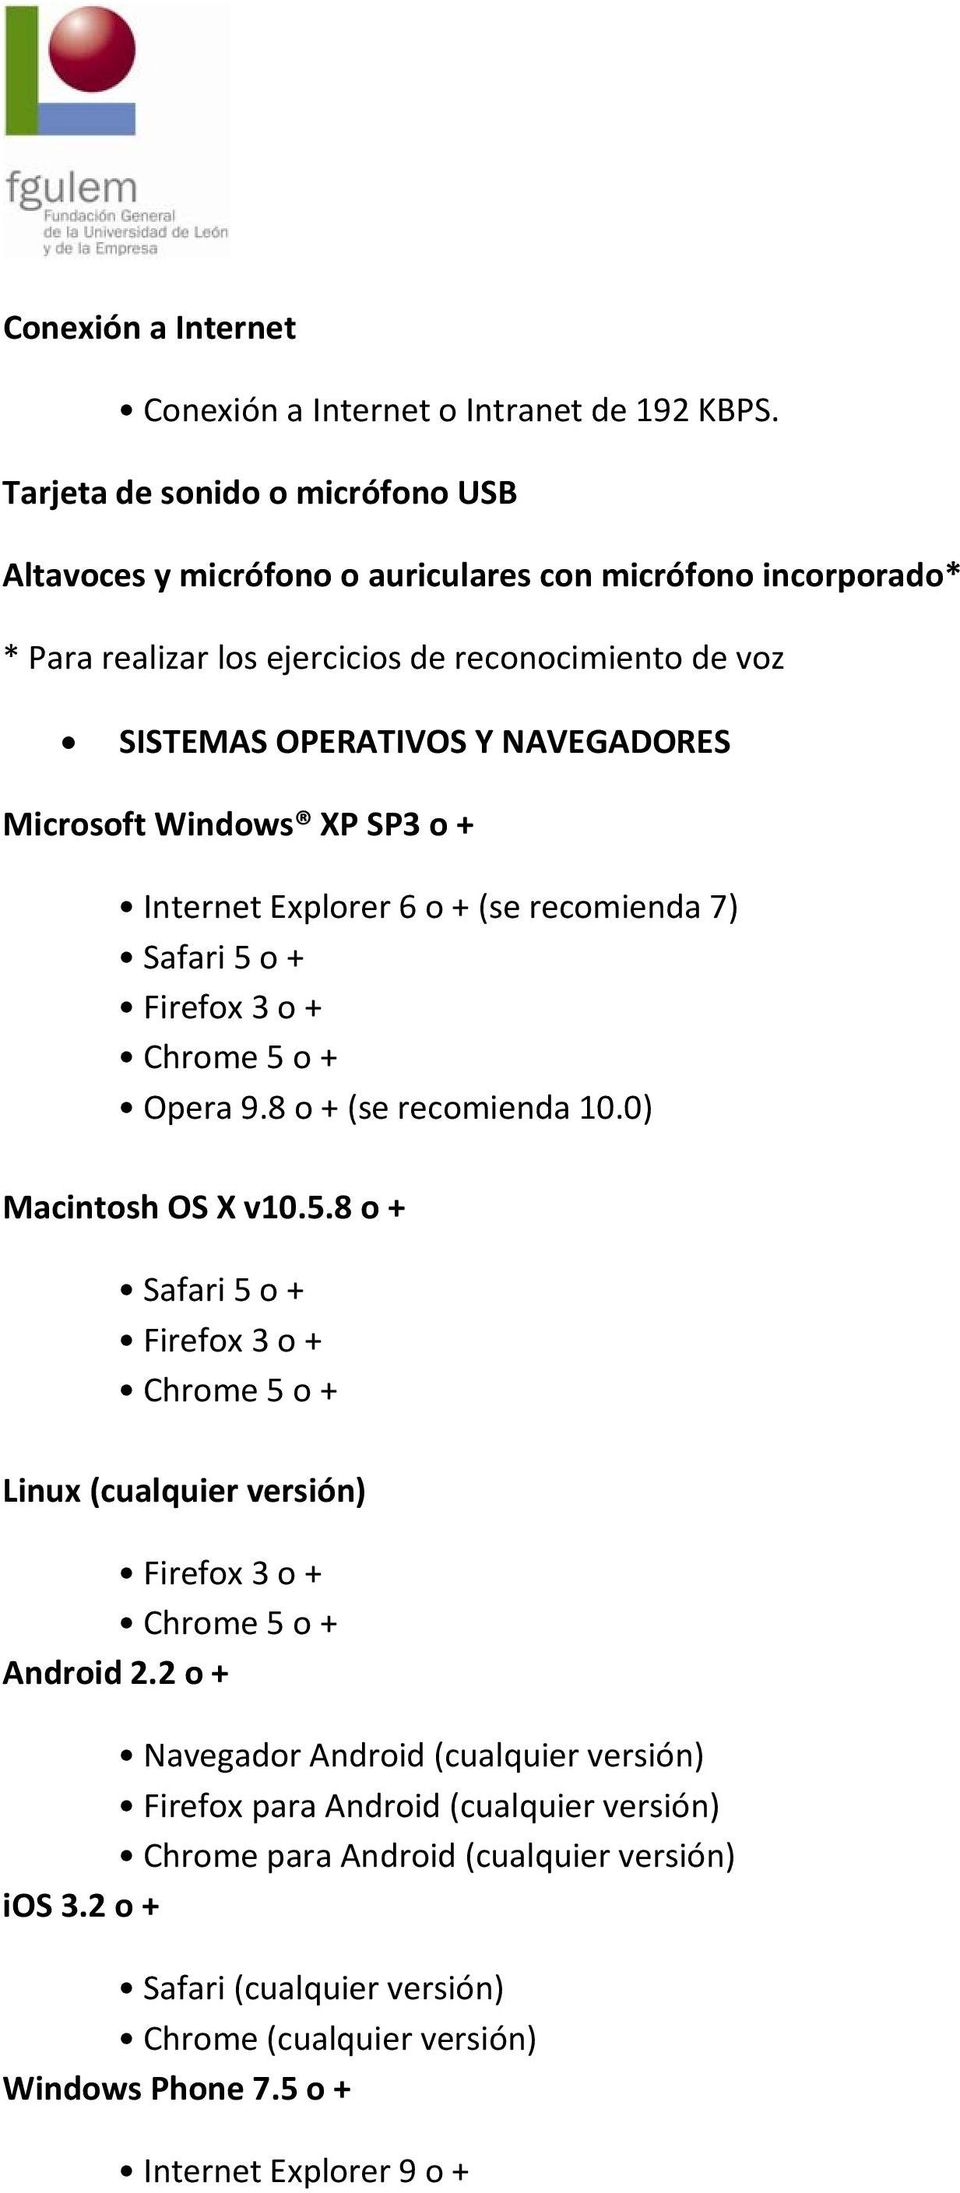 Microsoft Windows XP SP3 o + Internet Explorer 6 o + (se recomienda 7) Safari 5 o + Firefox 3 o + Chrome 5 o + Opera 9.8 o + (se recomienda 10.0) Macintosh OS X v10.5.8 o + Safari 5 o + Firefox 3 o + Chrome 5 o + Linux (cualquier versión) Firefox 3 o + Chrome 5 o + Android 2.